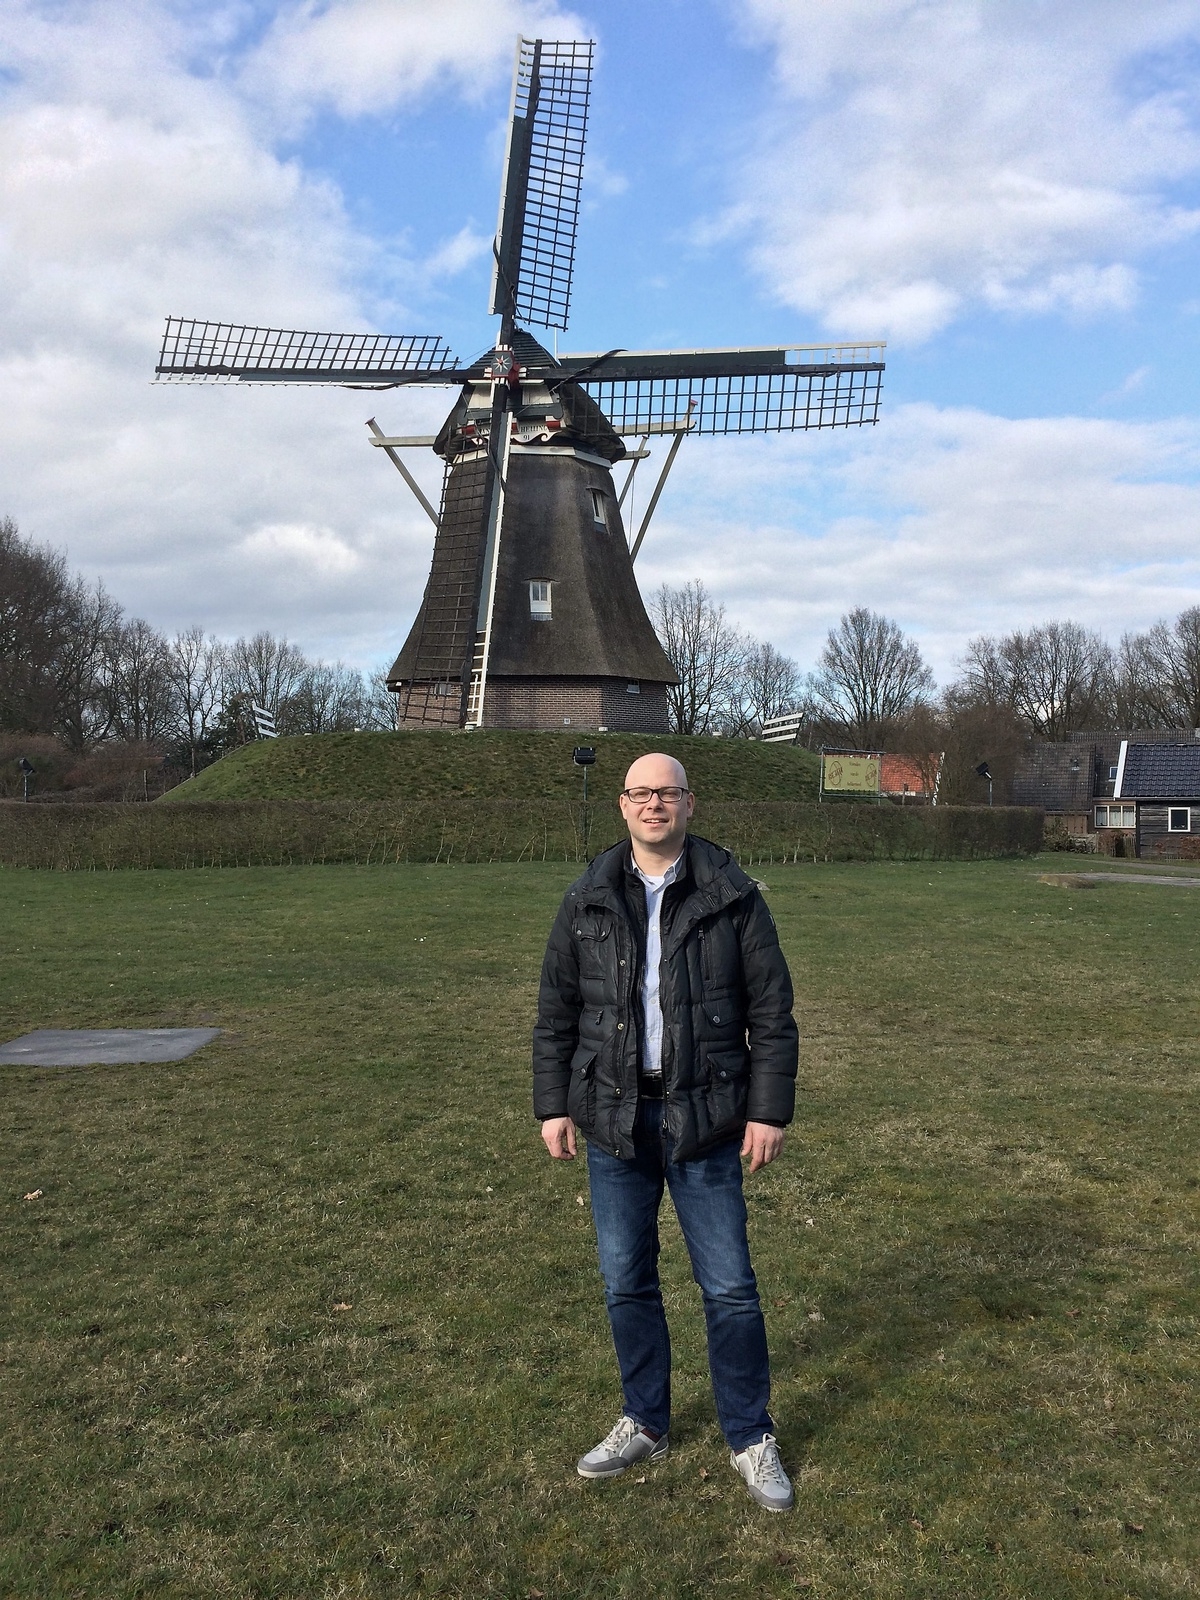 Holland är känt bland annat för sina kvarnar, tulpanfält, vallar och kanaler. Magnus Nilsson lämnade Hässleholm för 20 år sedan och bor med sin familj i Zeist, Utrecht. Han arbetar som musiker. 
Privat bild